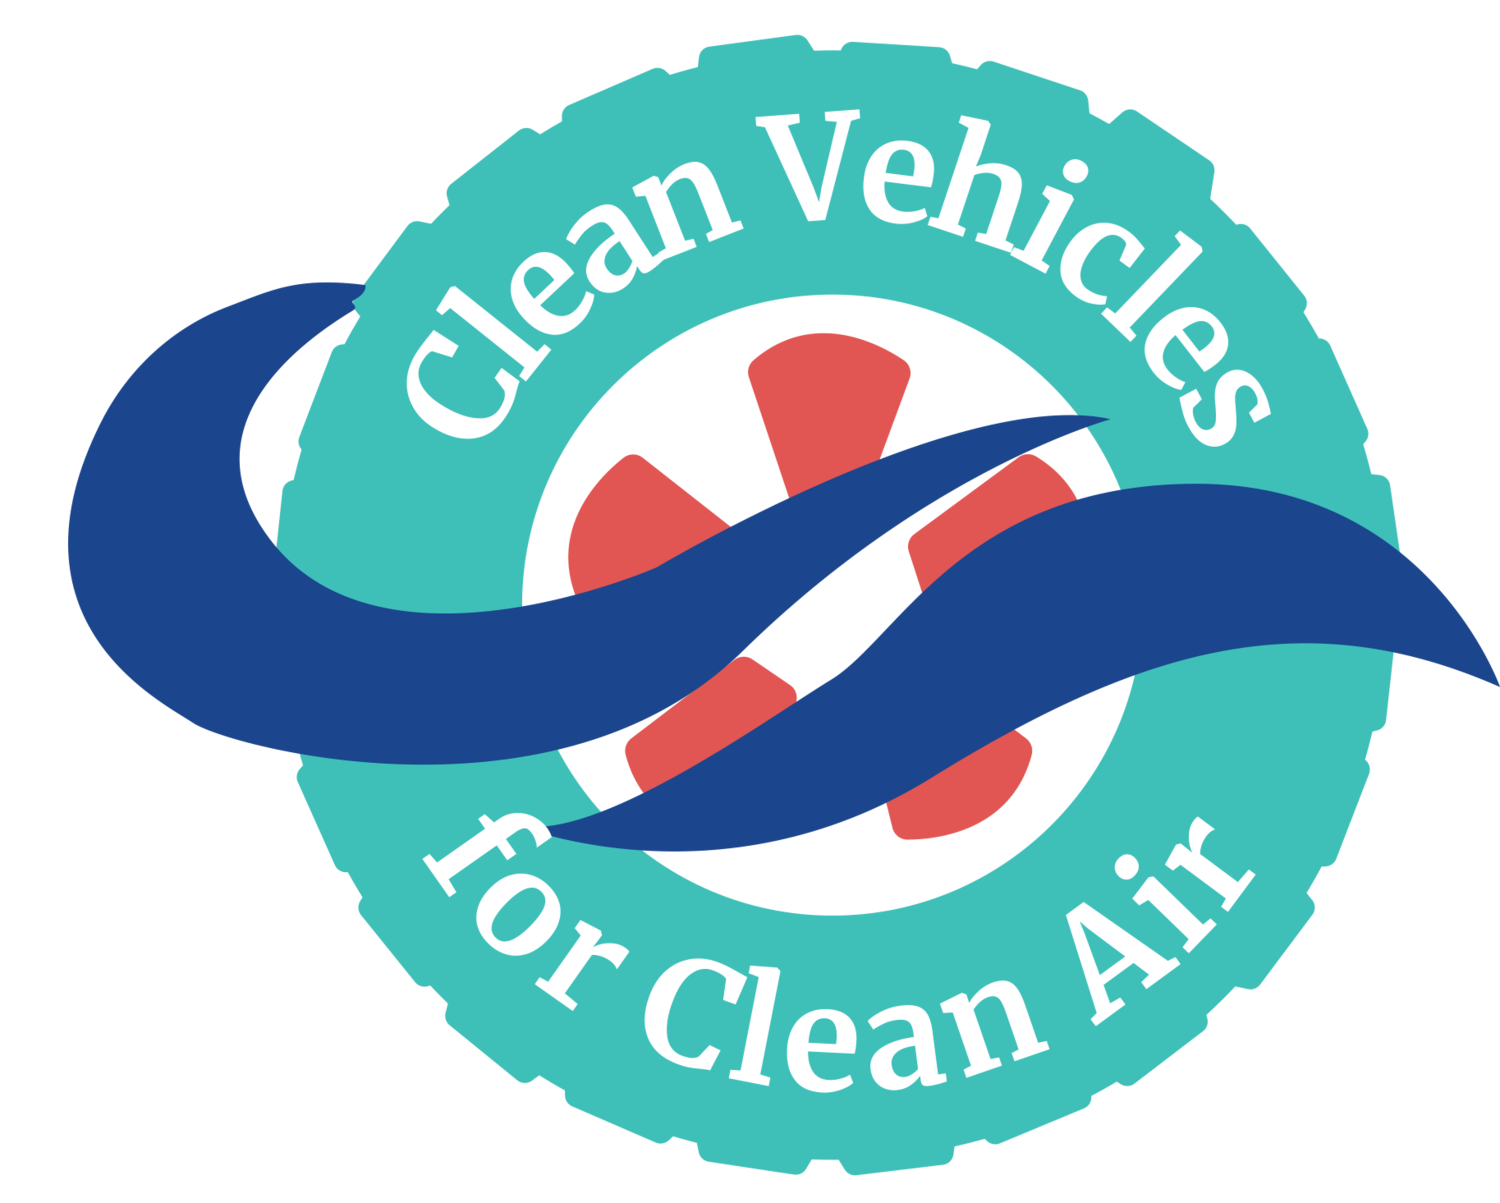 Clean Vehicles for Clean Air